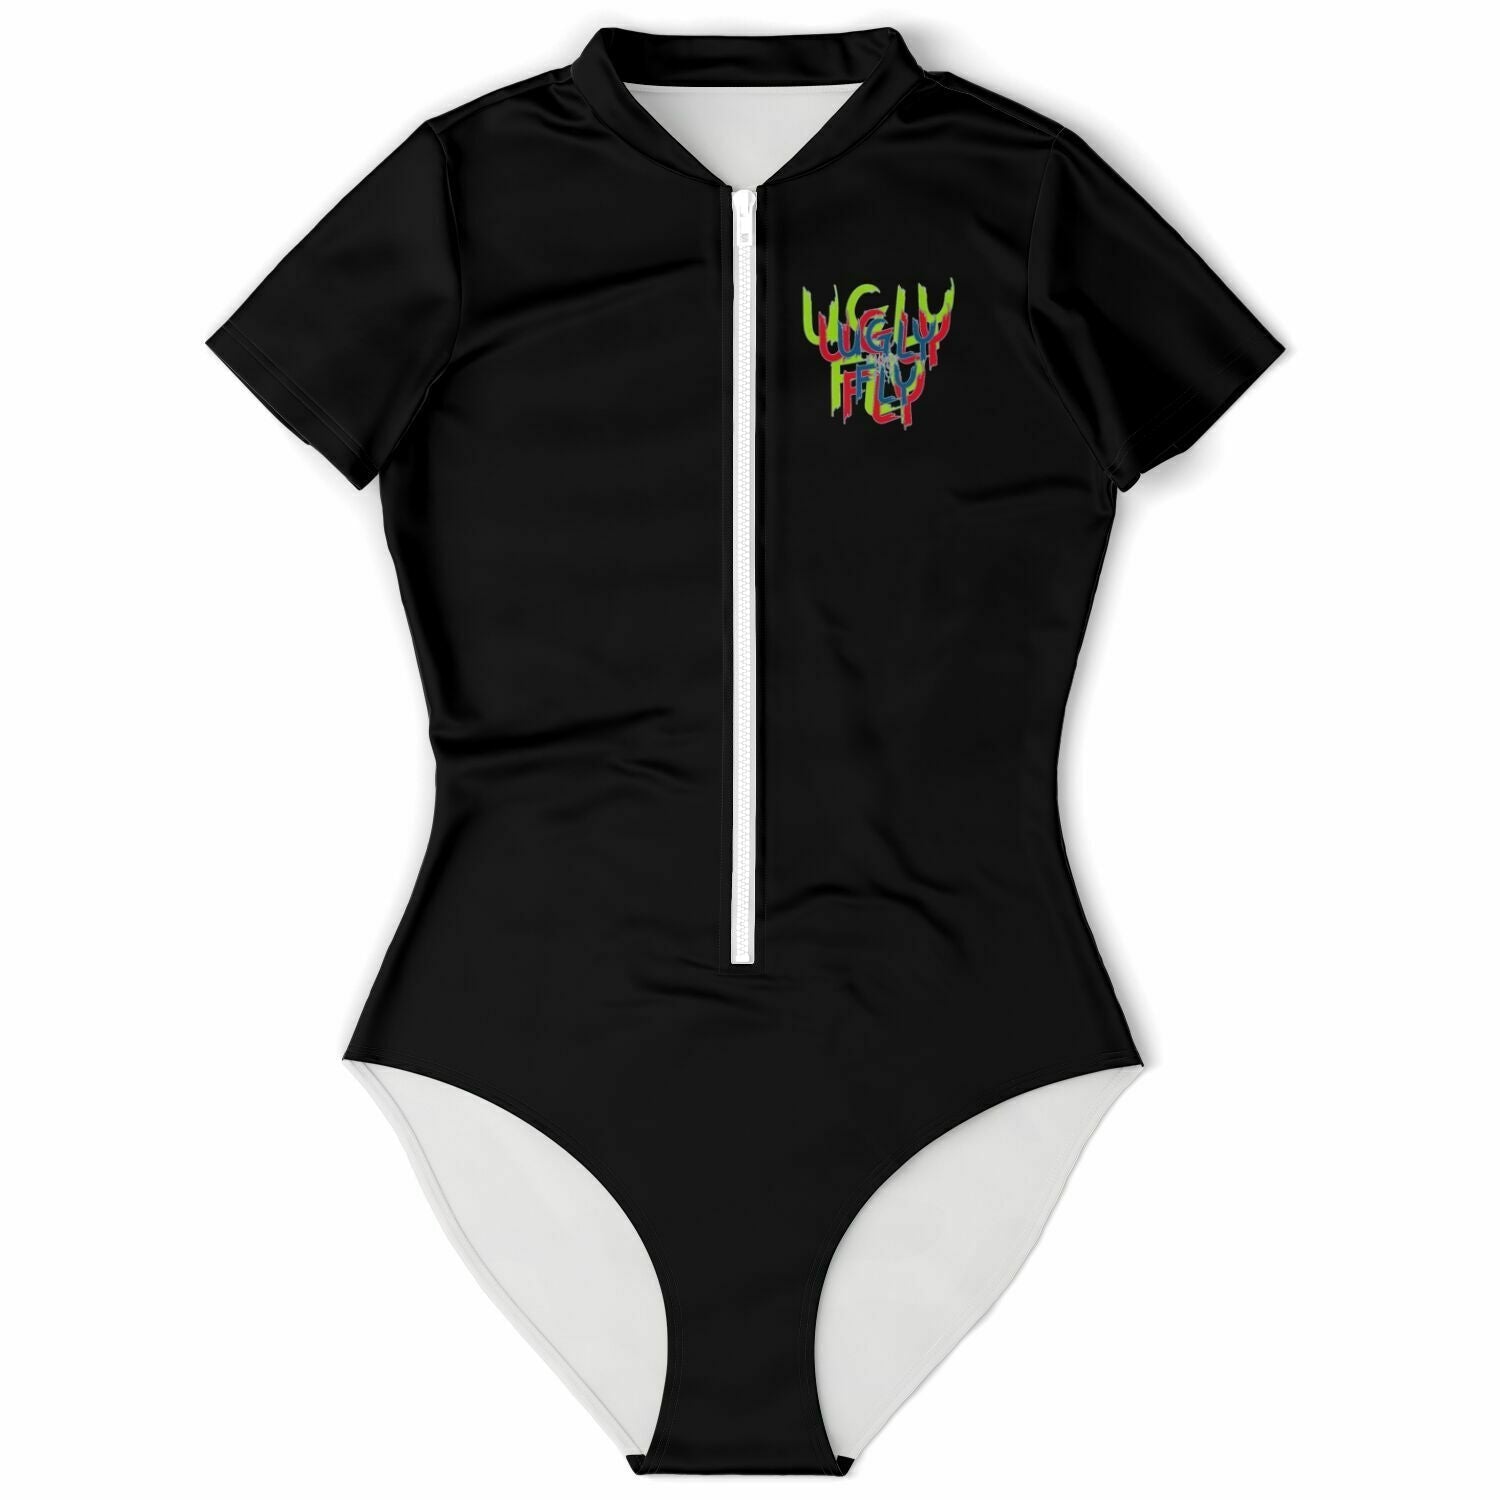 XL - Ugly Fly Short Sleeve Bodysuit - Bodysuit Short Sleeve - AOP at TFC&H Co.